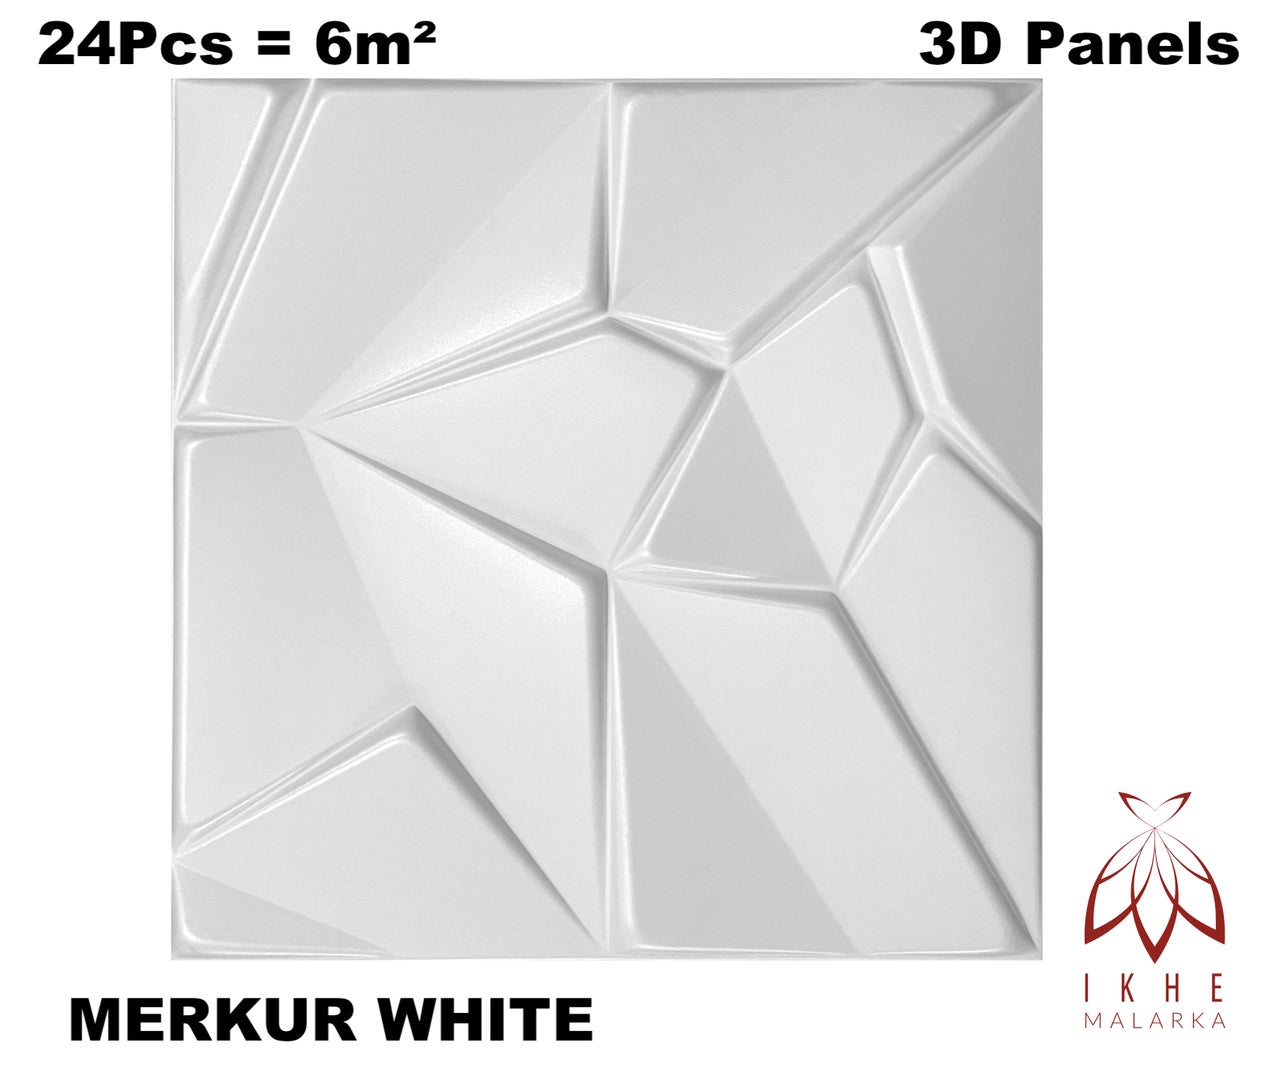 6m² / Paneles de pared 3D, revestimiento , paneles de techo, blanco,  MATERIAL POLIESTIRENO, espesor 2 mm 24 piezas - 0831